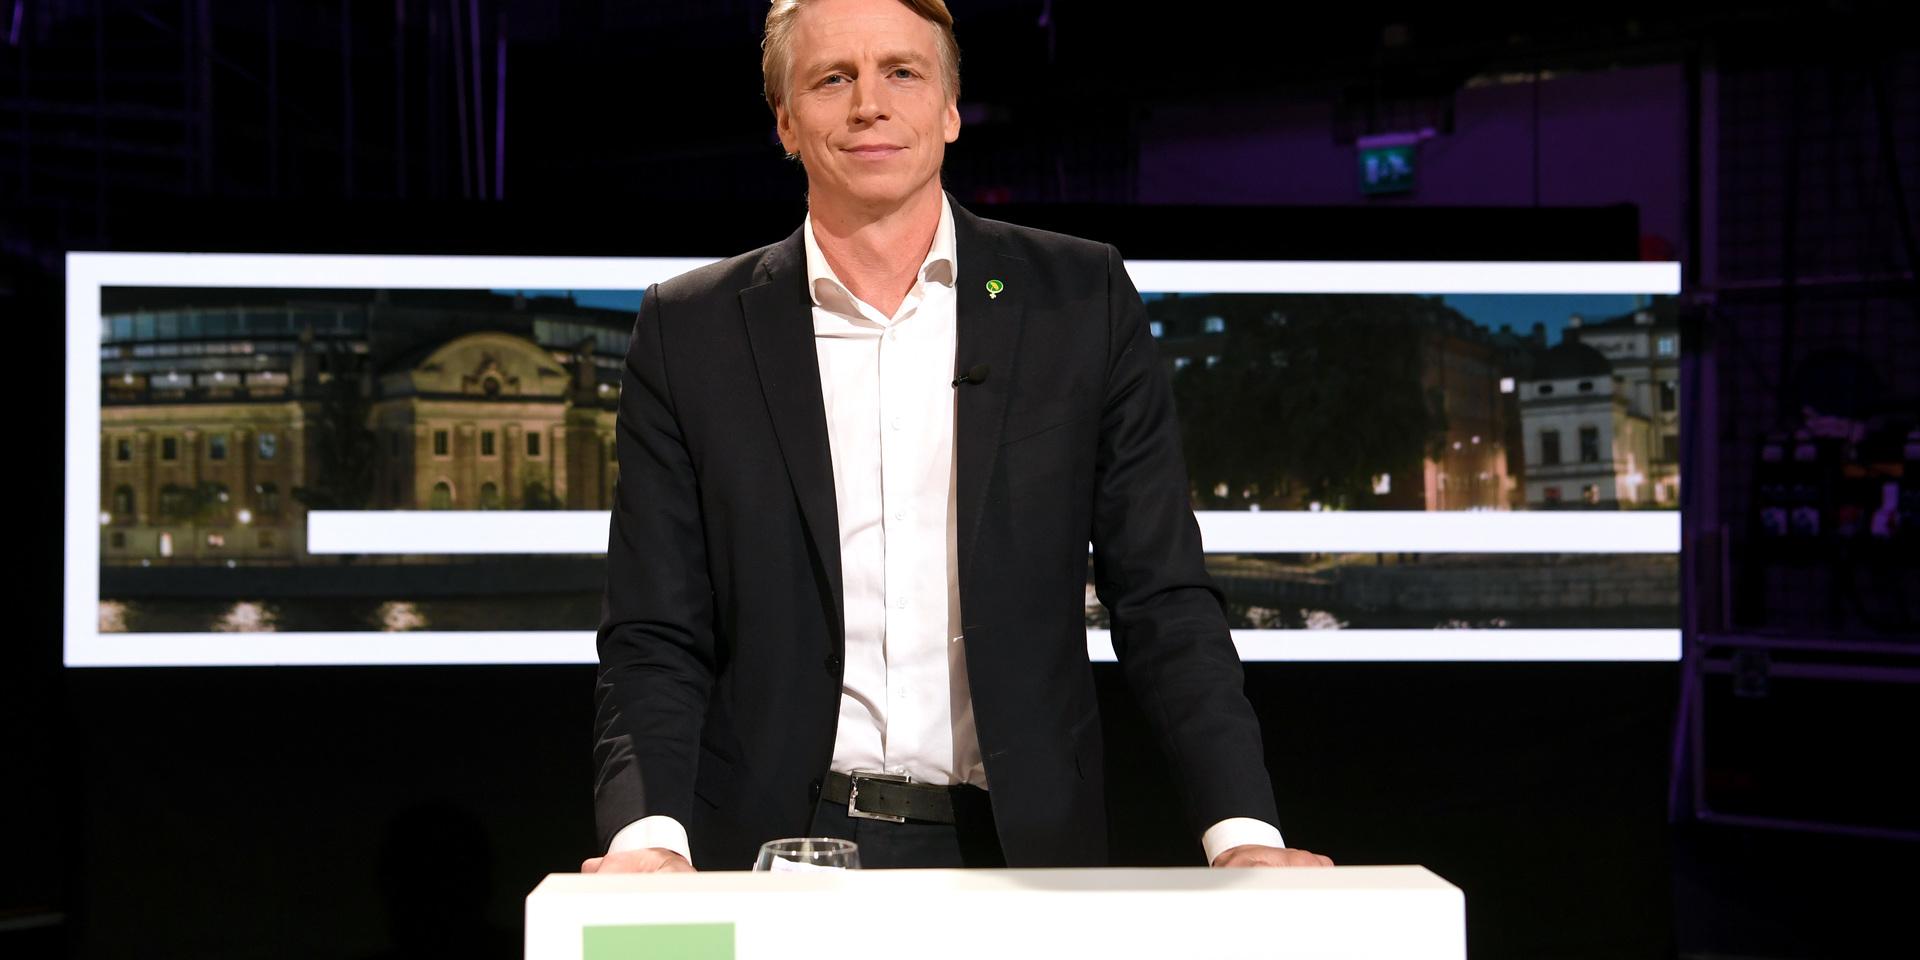 Miljöpartiets språkrör Per Bolund (MP) borde använda mer grönt och mindre brunt, tycker debattören.